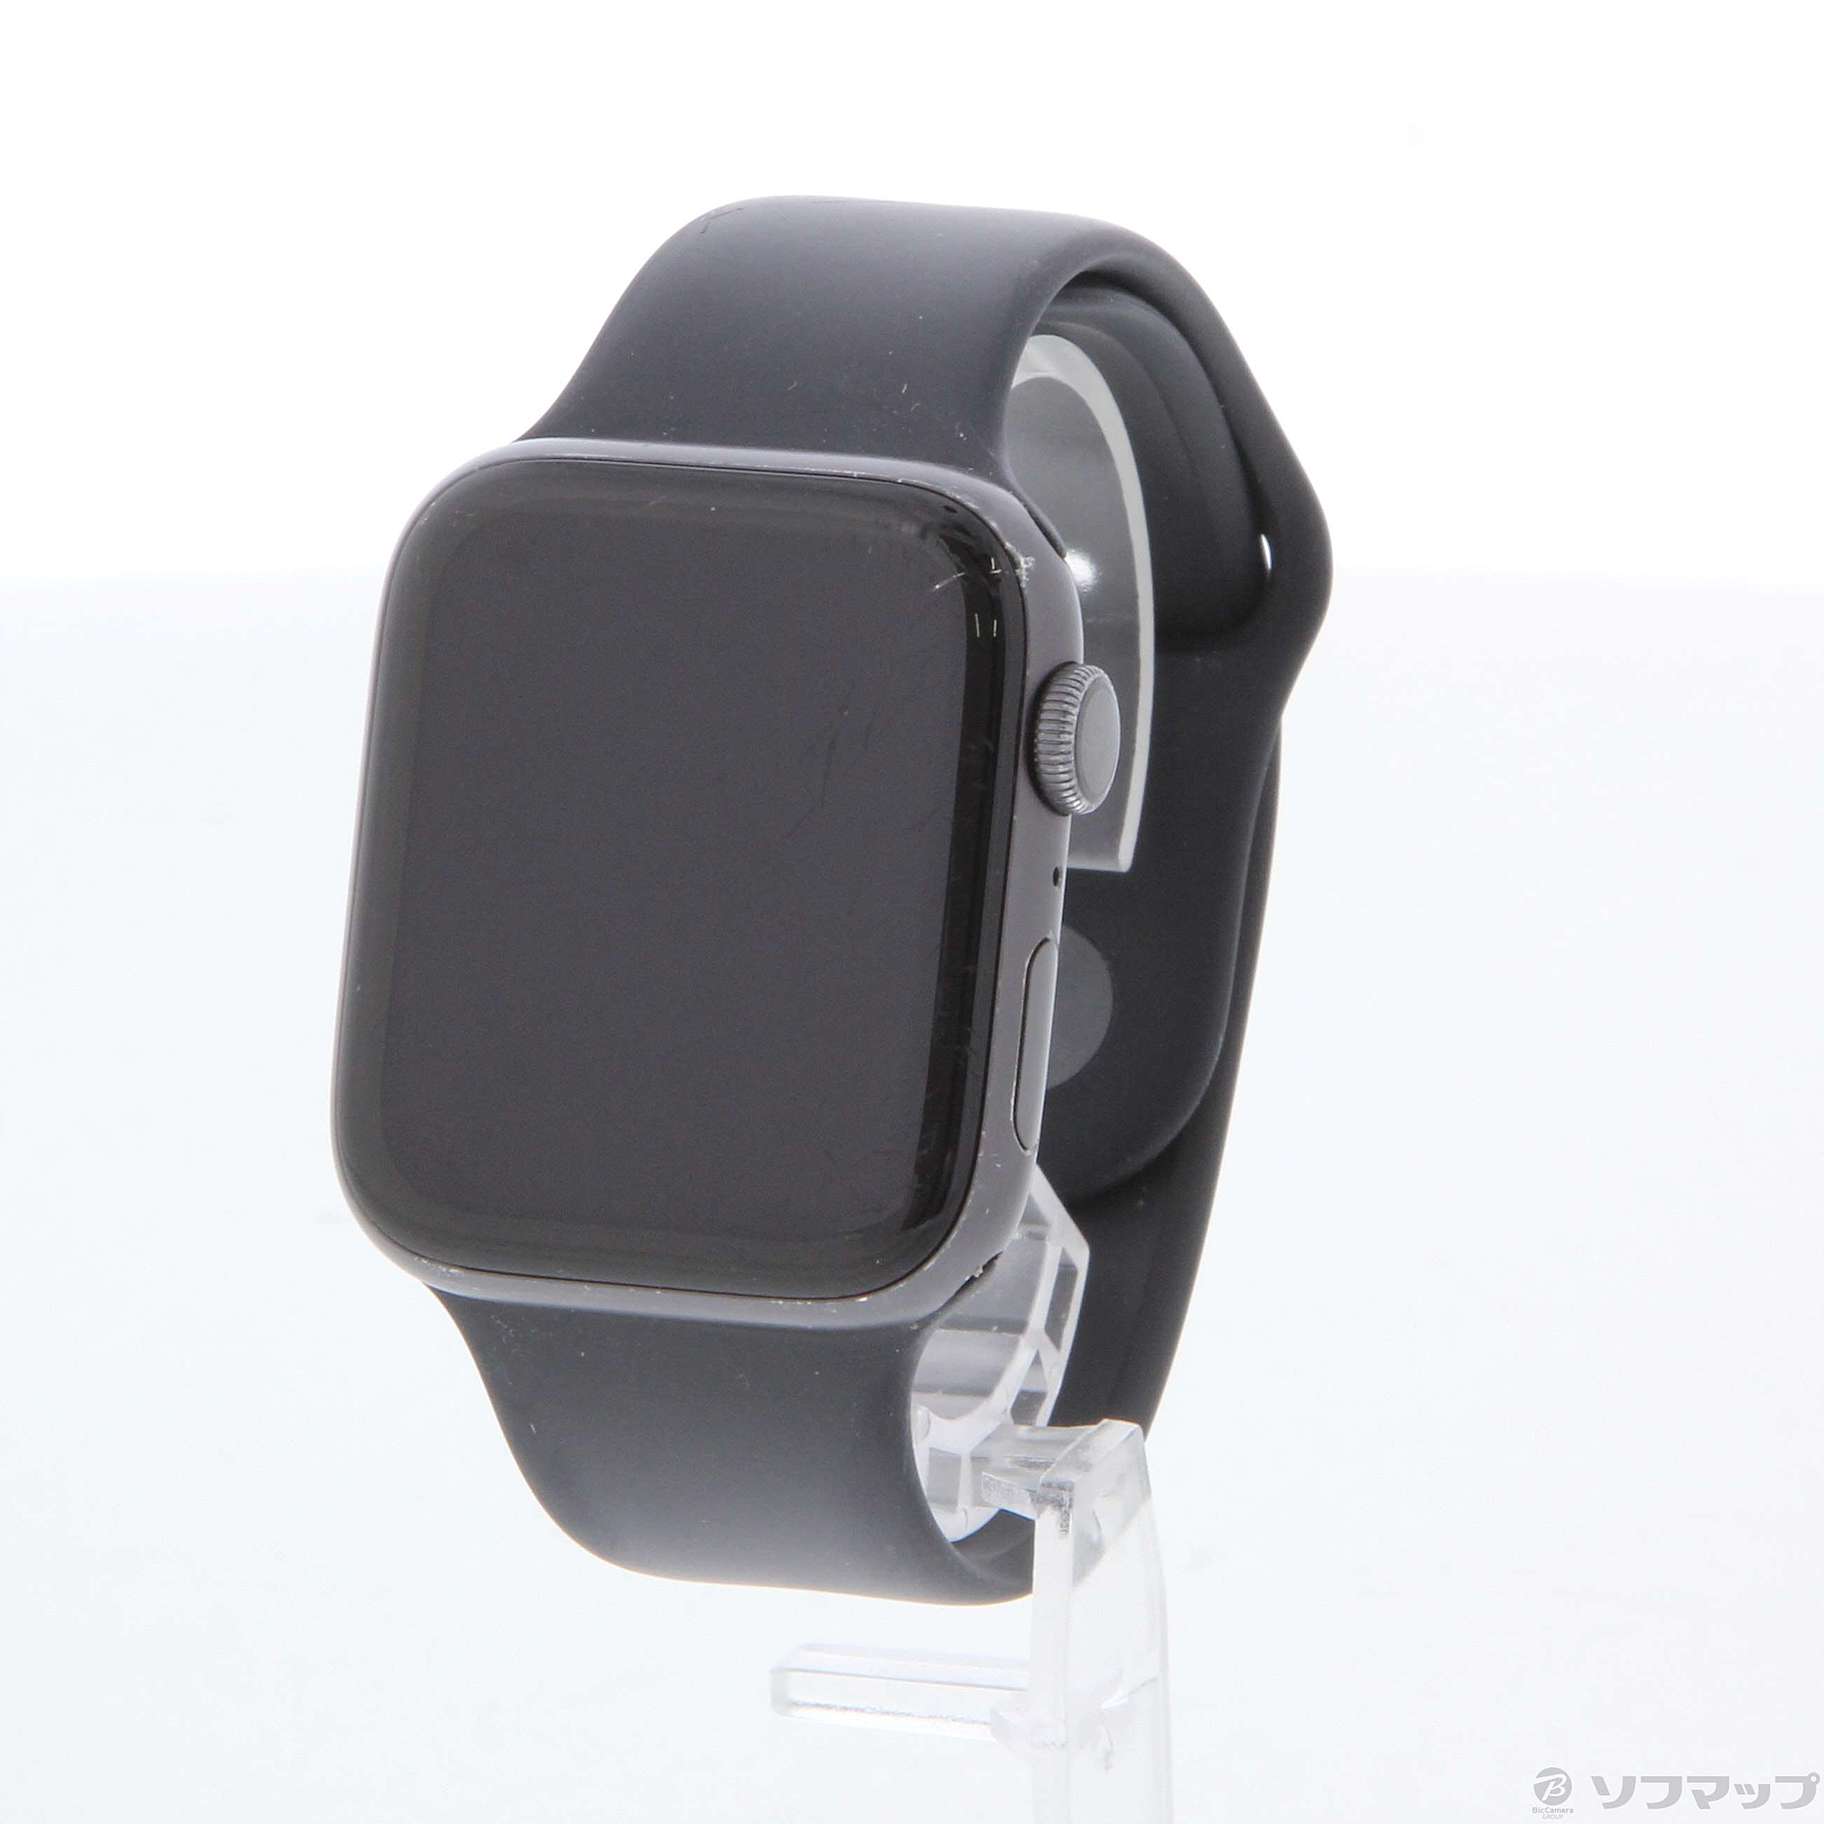 〔中古品〕 Apple Watch Series 5 GPS 44mm スペースグレイアルミニウムケース ブラックスポーツバンド